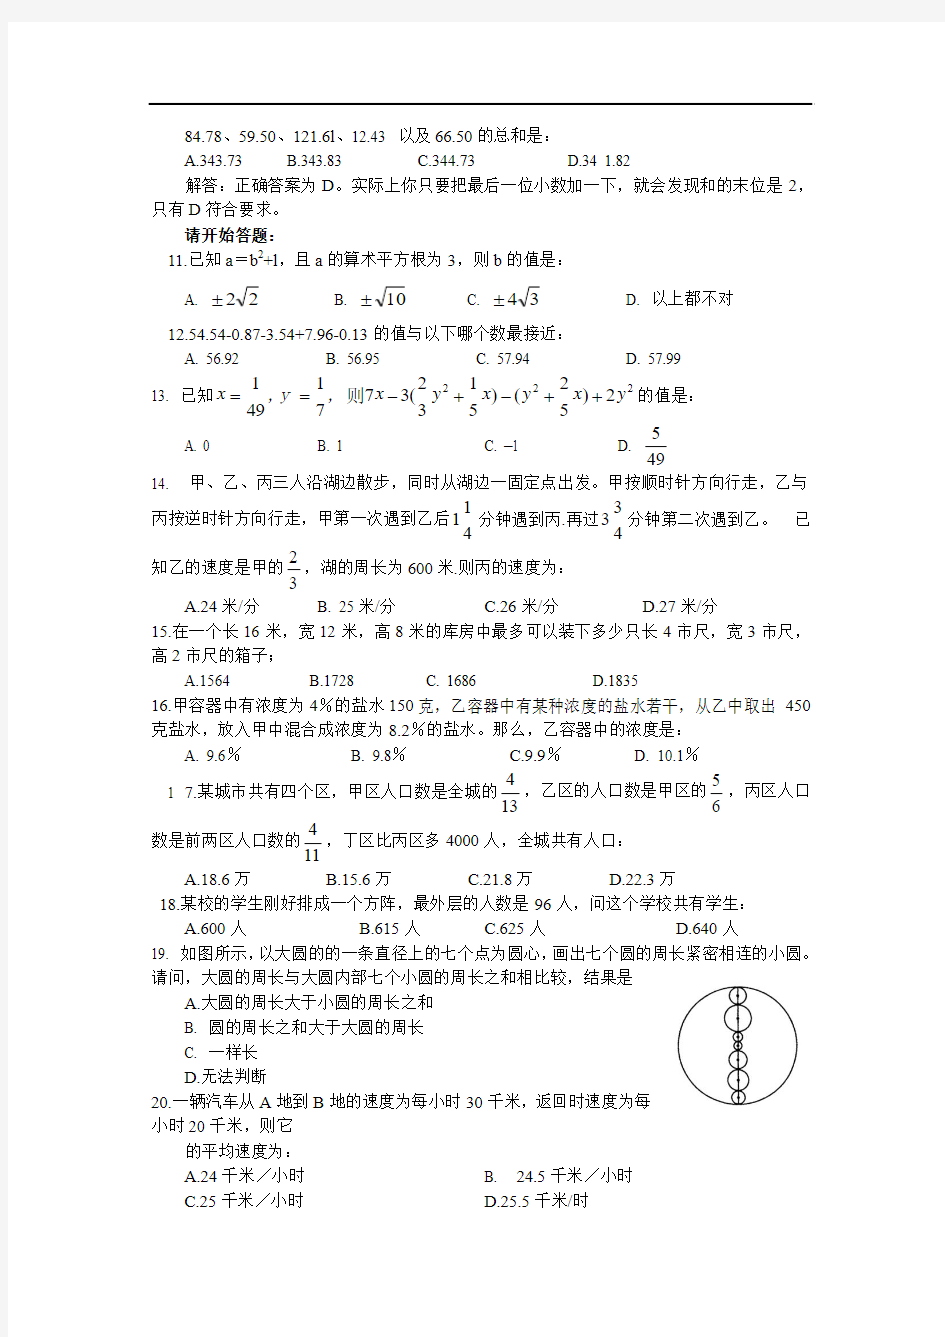 2010年浙江省党政机关录用国家公务员(机关工作人员)考试行政能力倾向测试试卷及答案